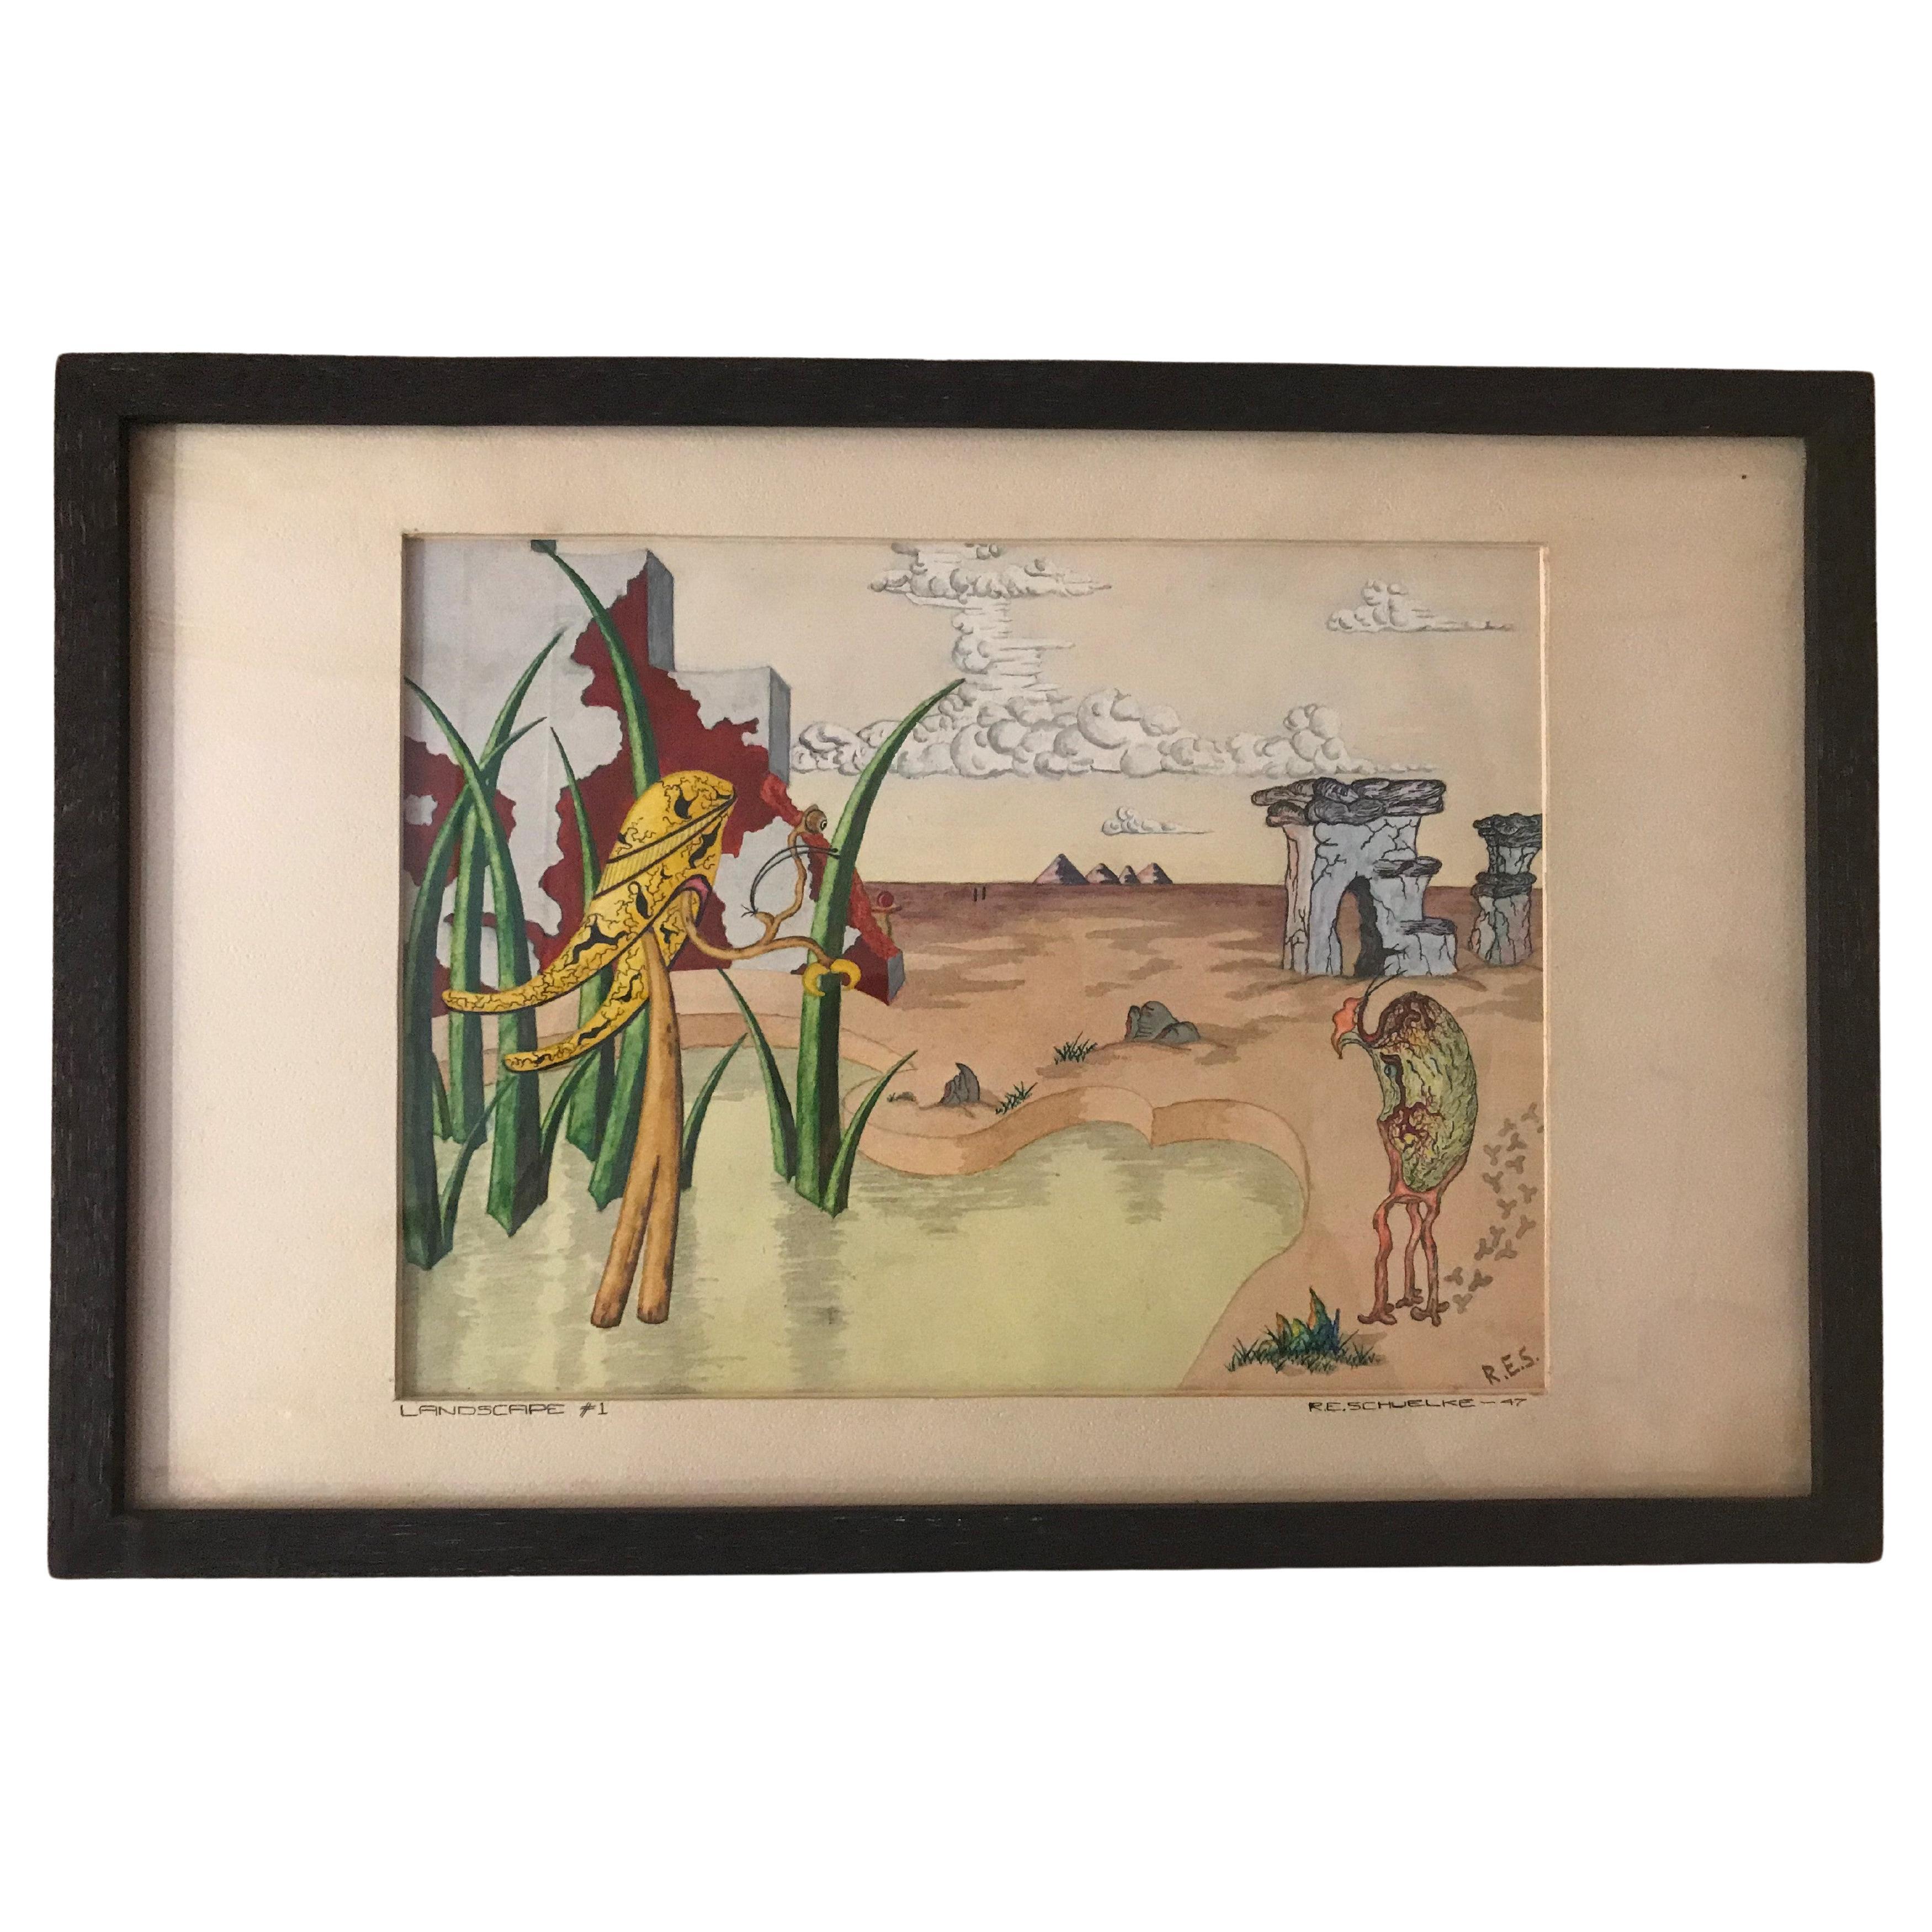 Aquarelle de paysage surréaliste signée R. E. Schwelke et datée de 1947